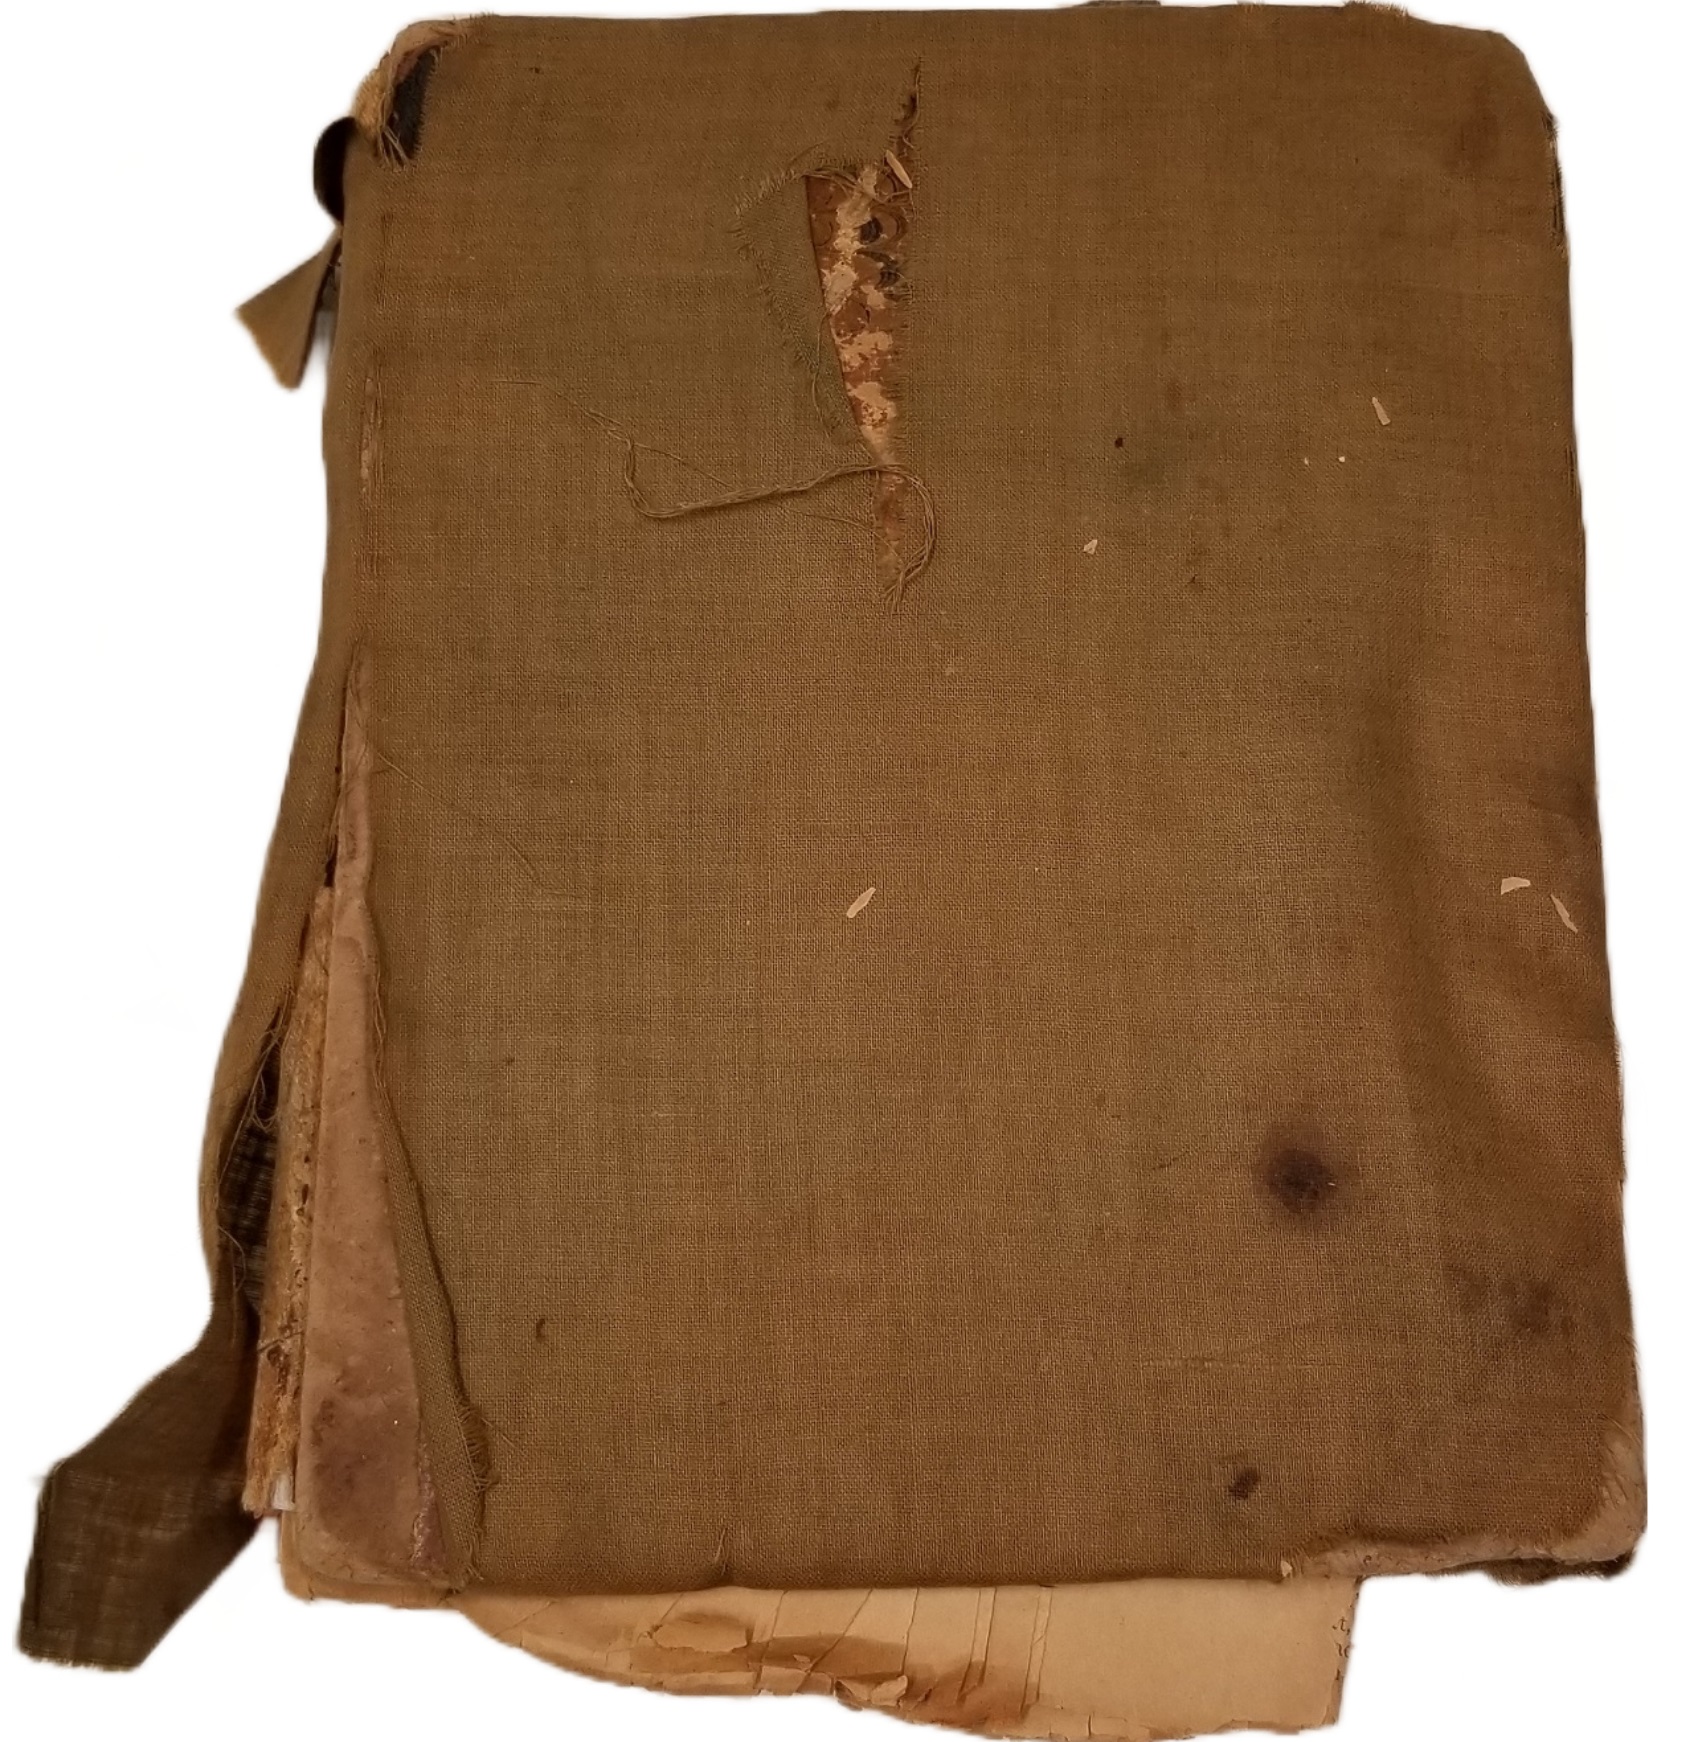 Scrapbook covered in torn brown burlap.